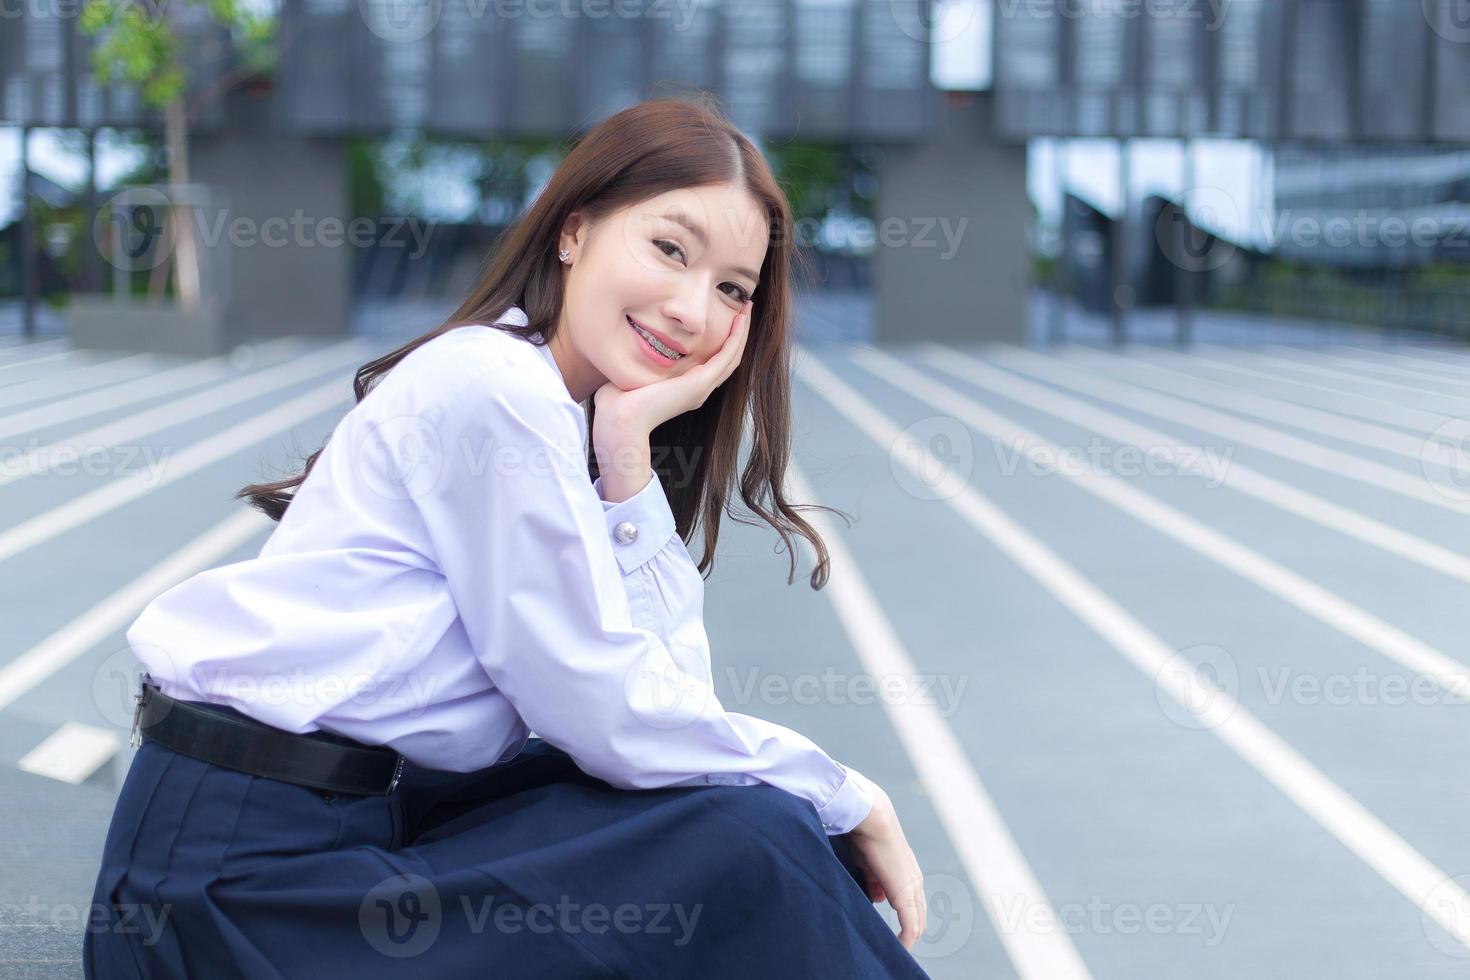 mooie Aziatische middelbare school student meisje in het schooluniform met beugels op haar tanden zit en glimlacht vol vertrouwen terwijl ze gelukkig naar de camera kijkt met het gebouw op de achtergrond. foto